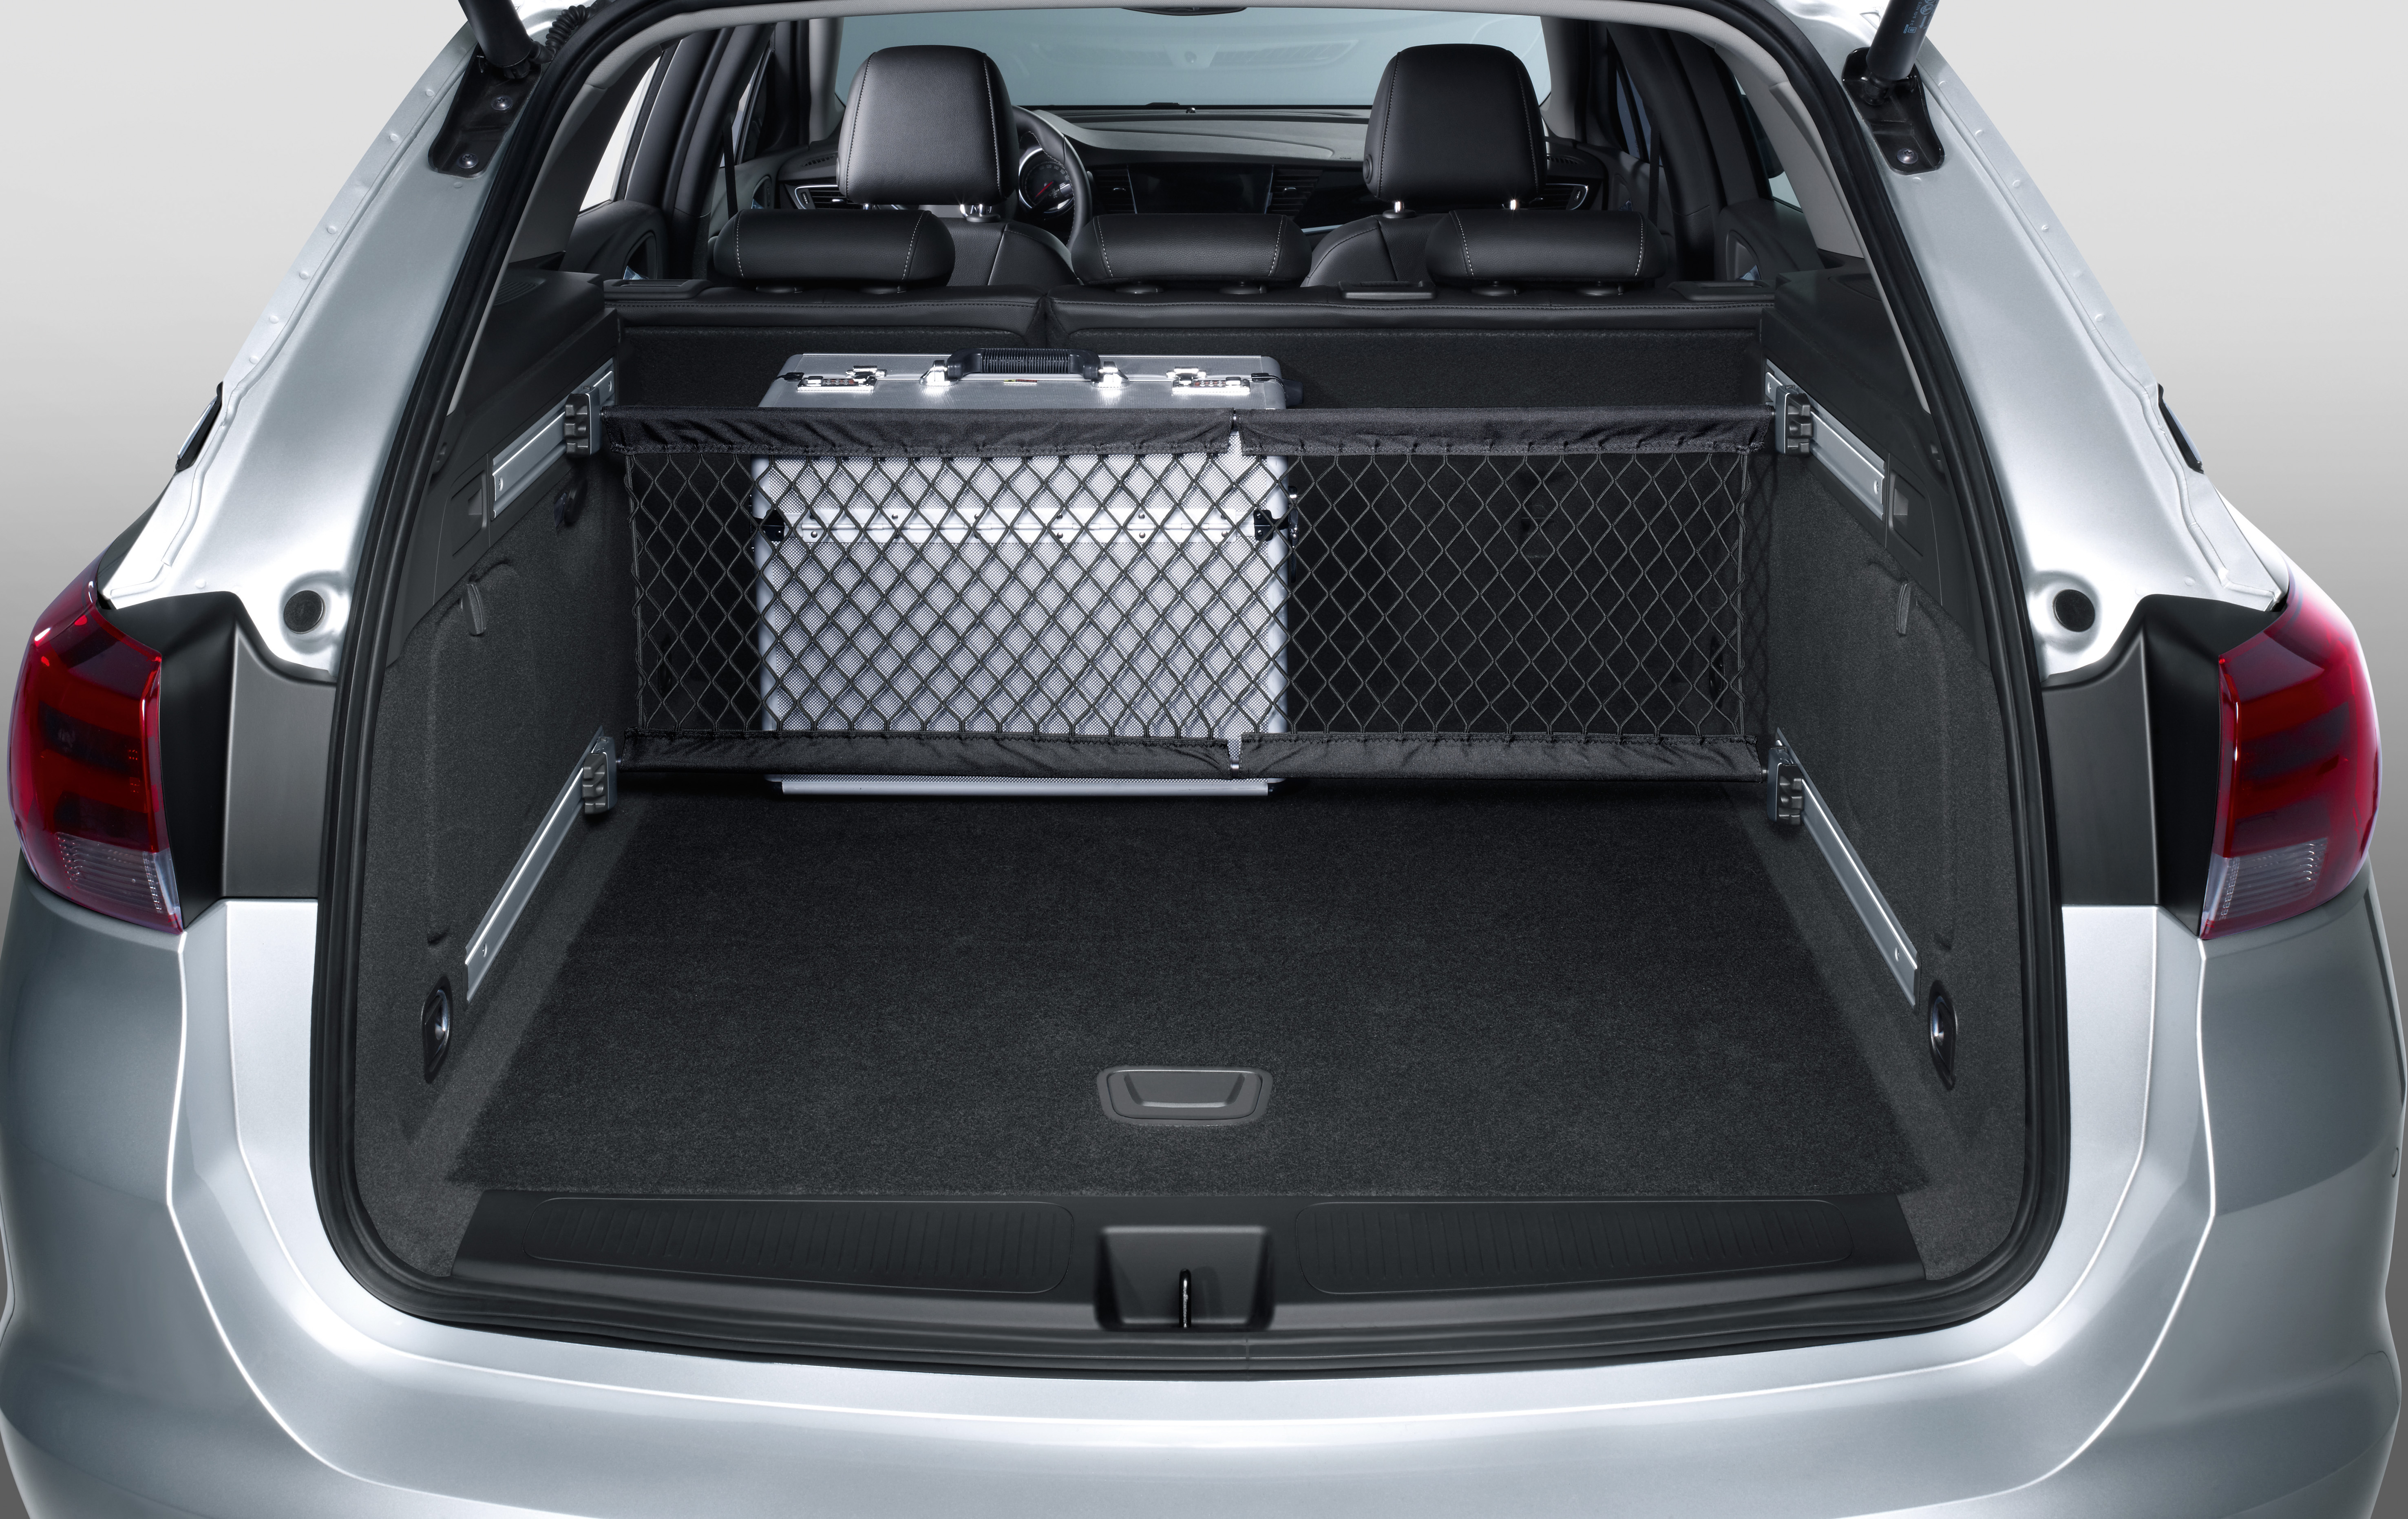 Купить багажника опель зафира б. Opel Astra Sports Tourer багажник. Opel Astra j универсал багажник. Opel Zafira Tourer багажник.